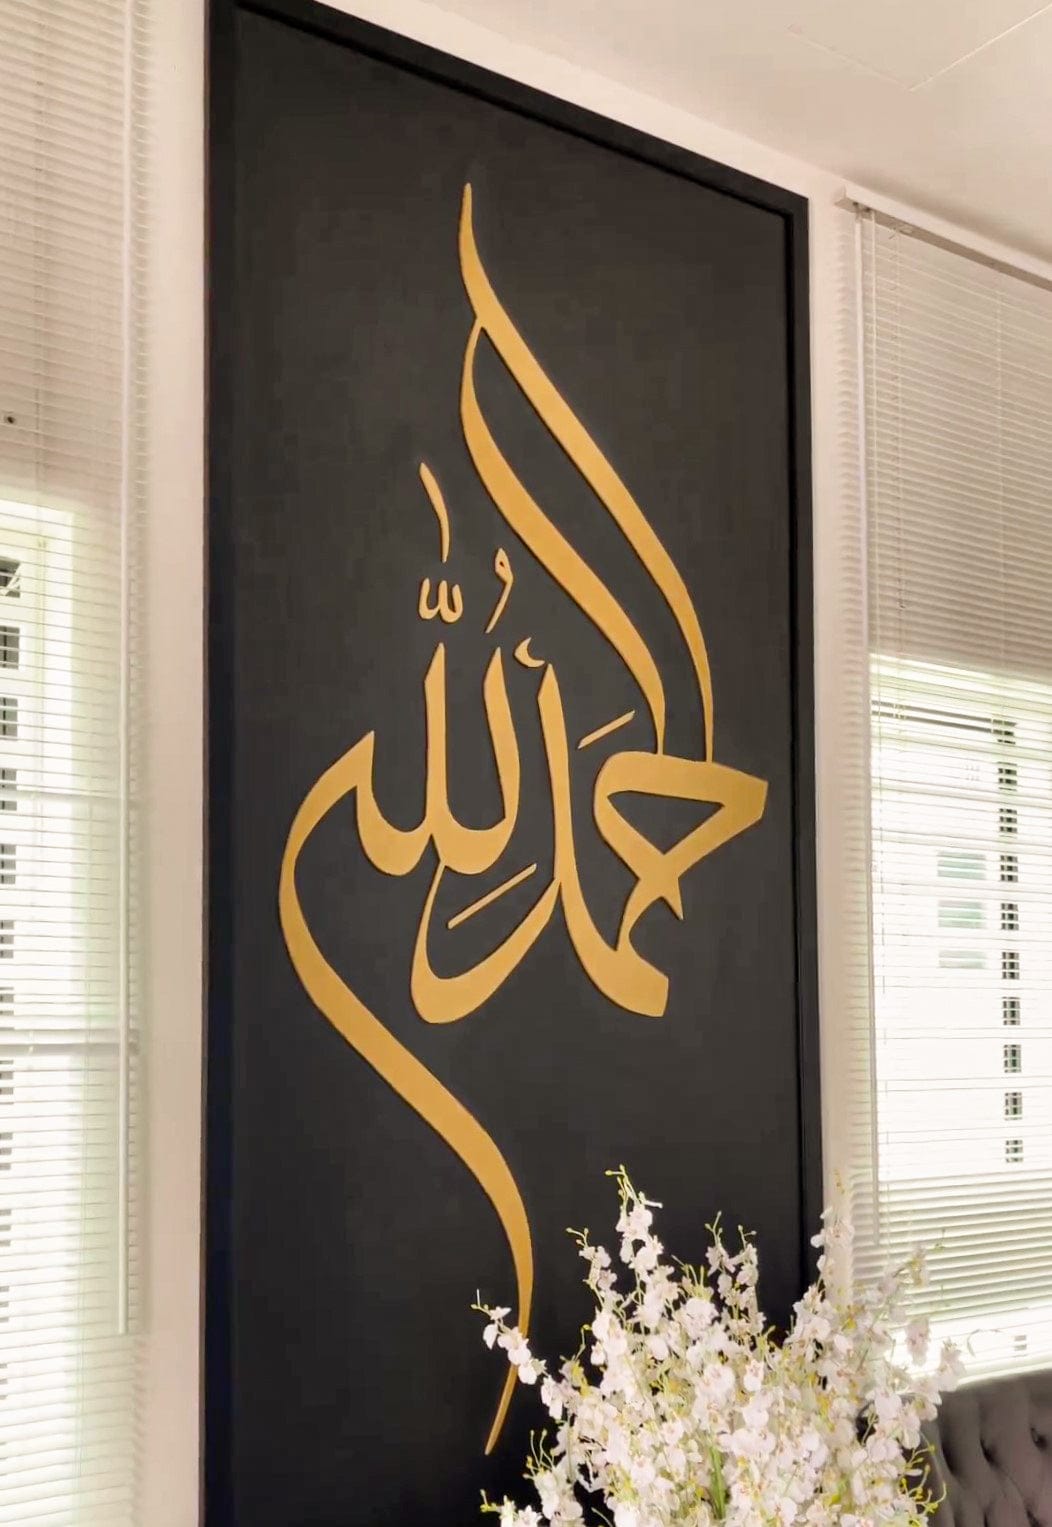 Vente Tableaux calligraphie islamique, Lever du soleil لوحة خط